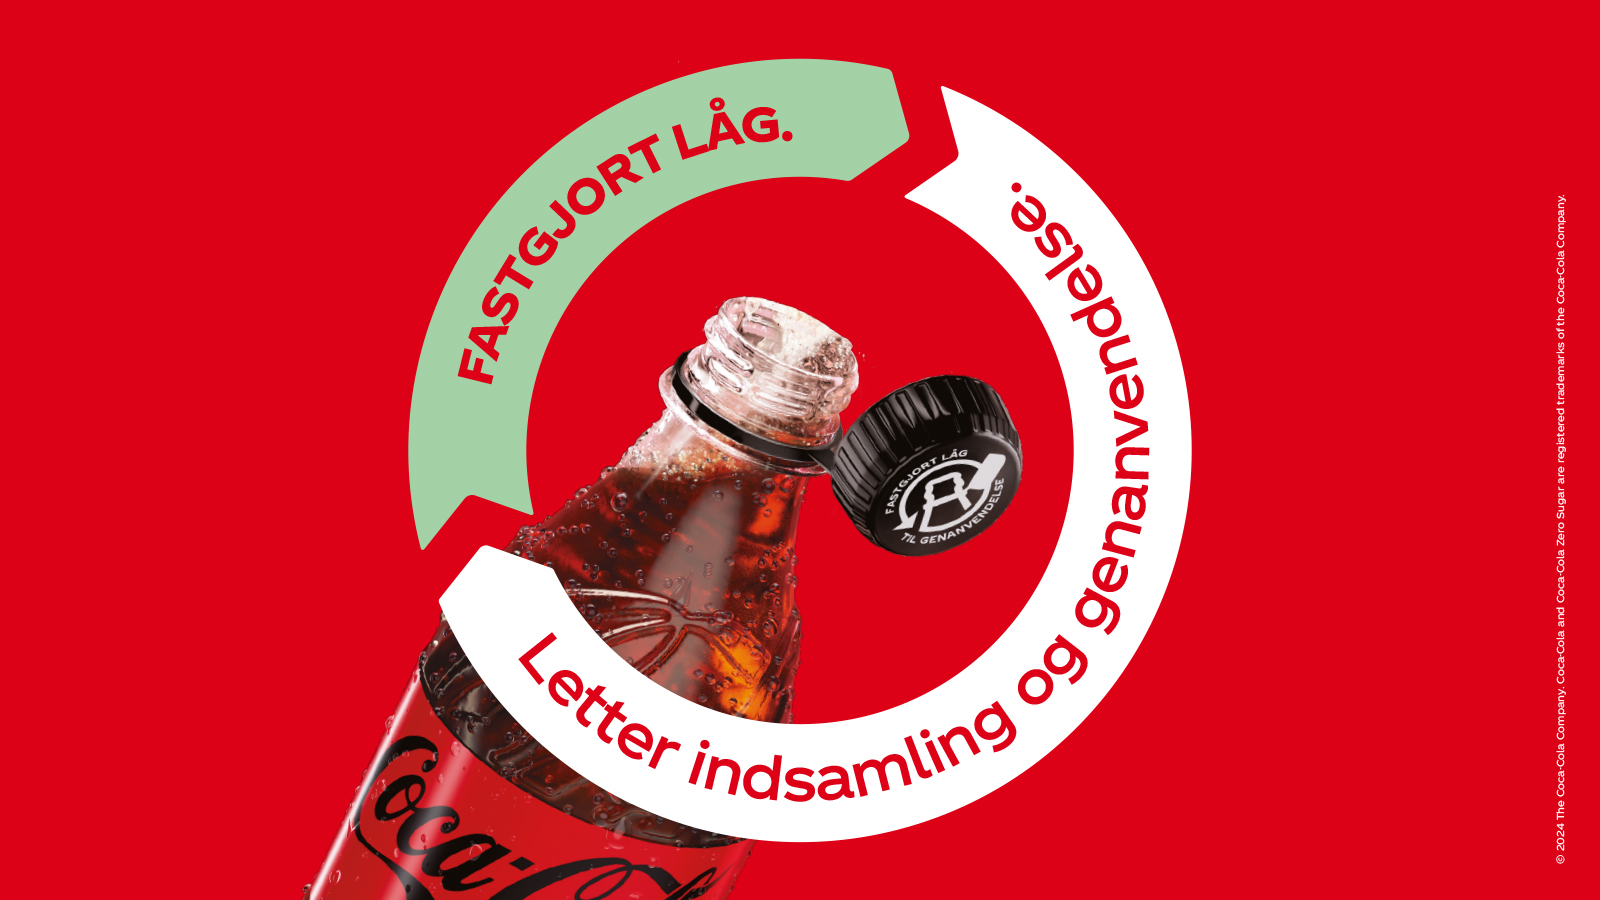 Coca-Cola Danmark lancerer fastgjorte låg for at mindske plastikforbruget